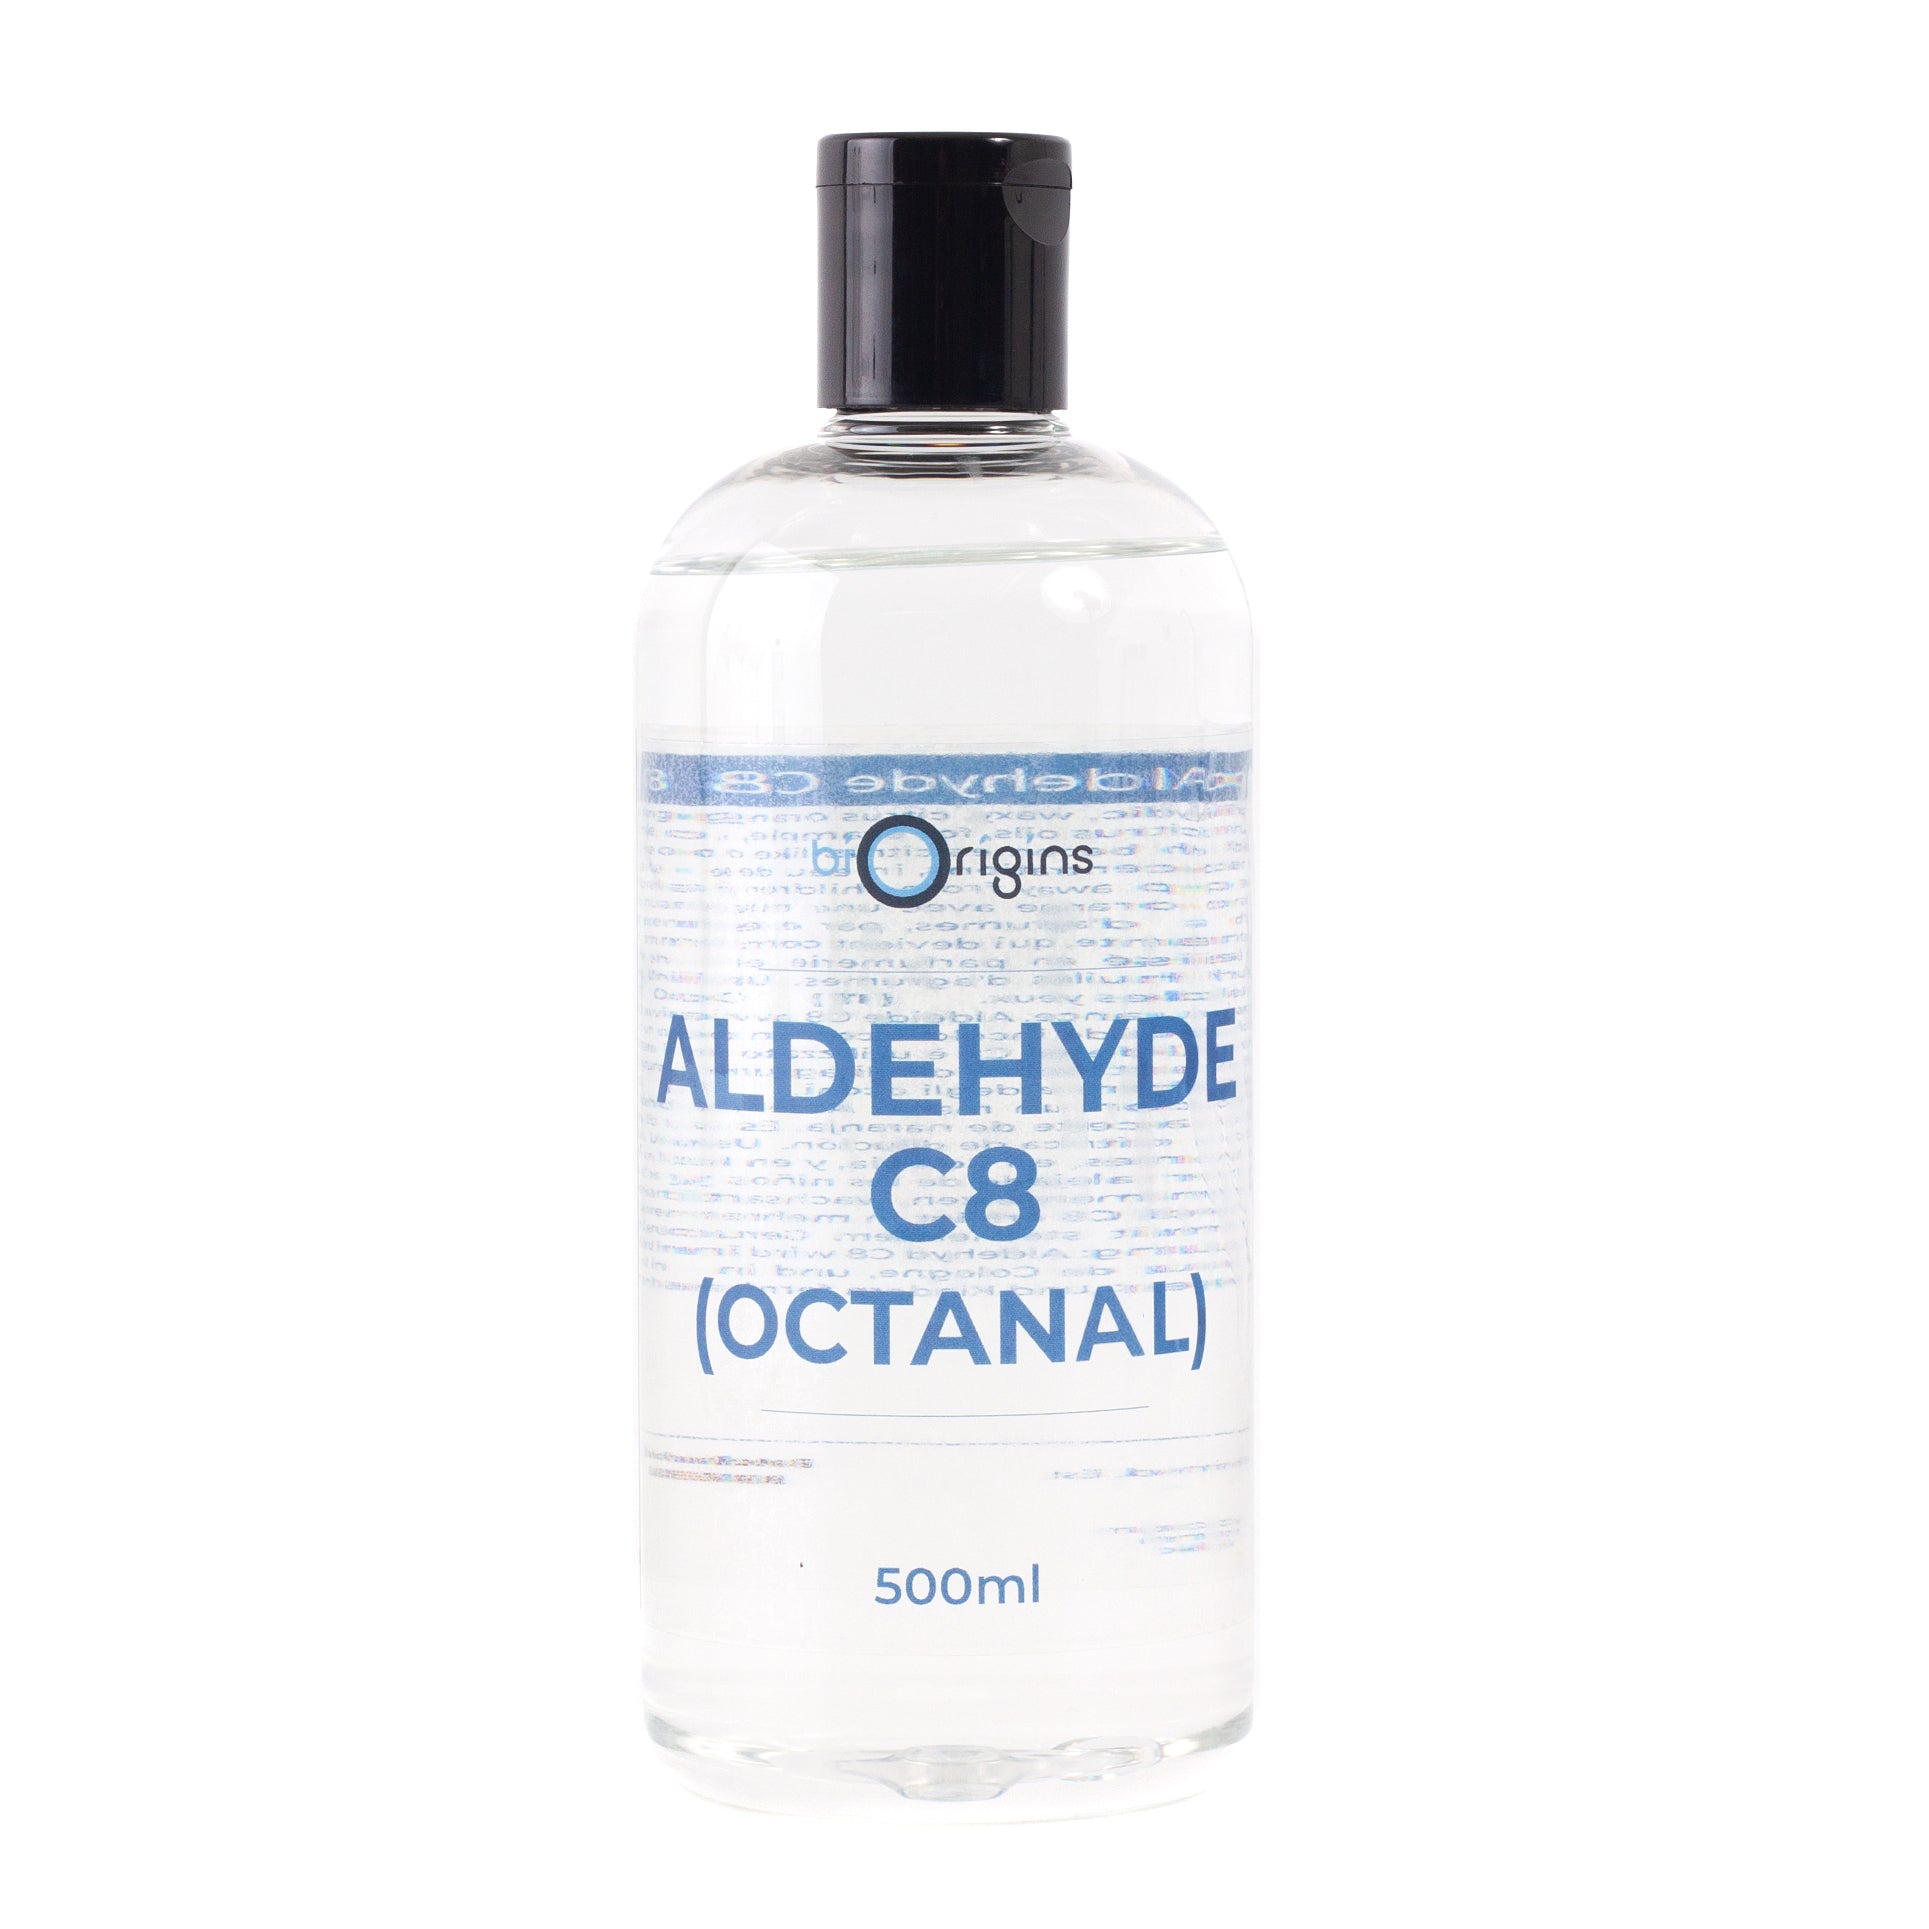 Aldehyde C8 (Octanal)